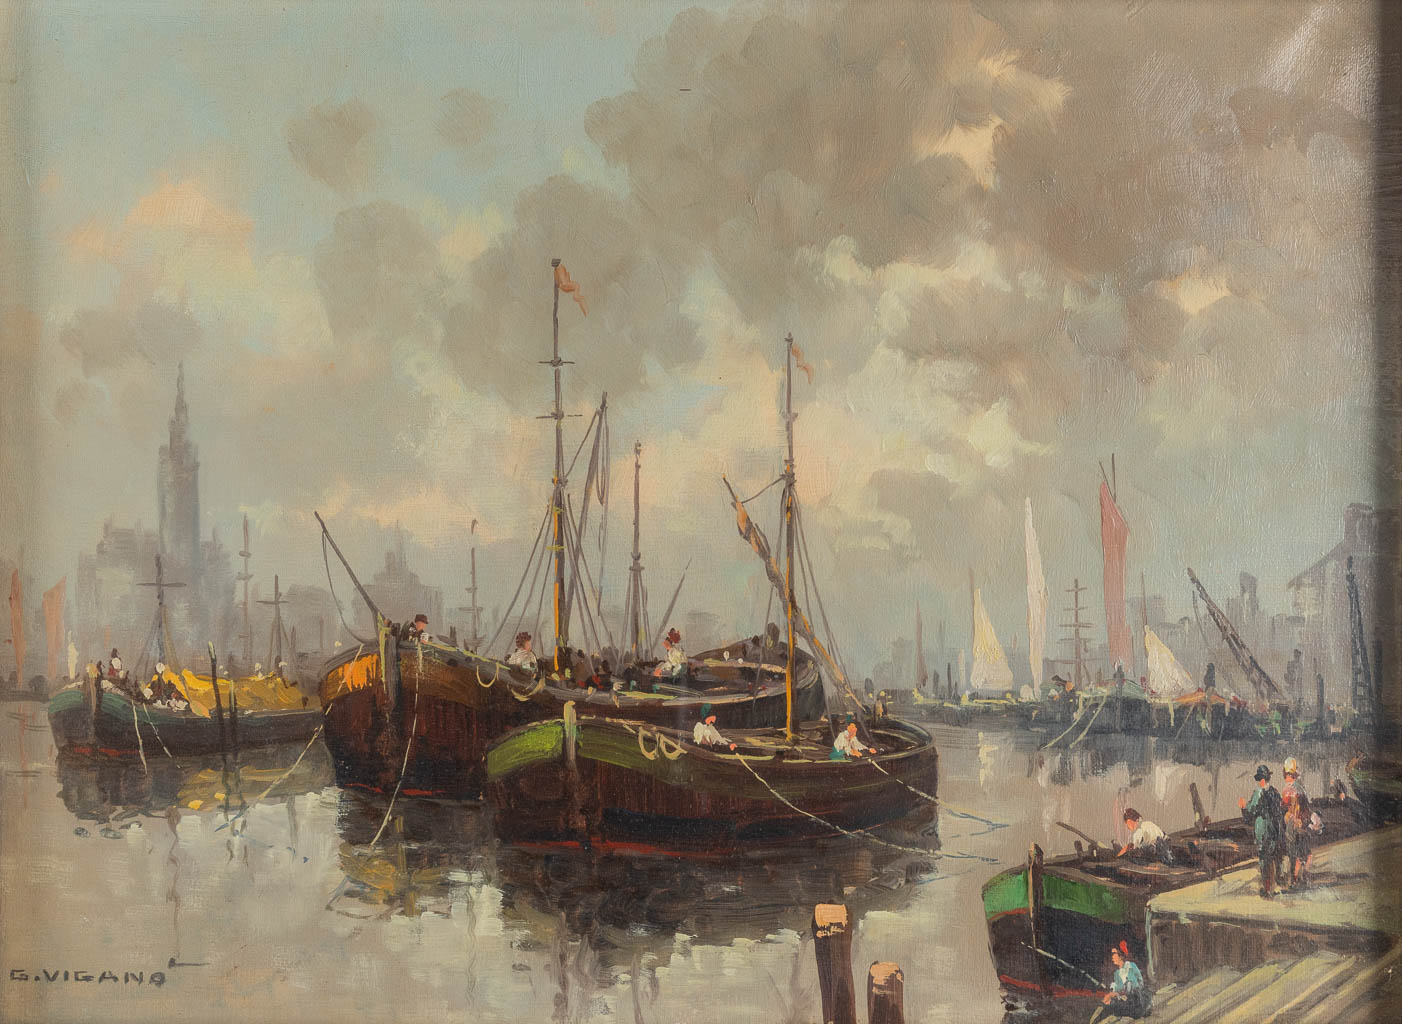 Giuseppe VIGANO (1910-?) 'Porticciolo à Rotterdam' oil on canvas. (W:40 x H:30 cm)